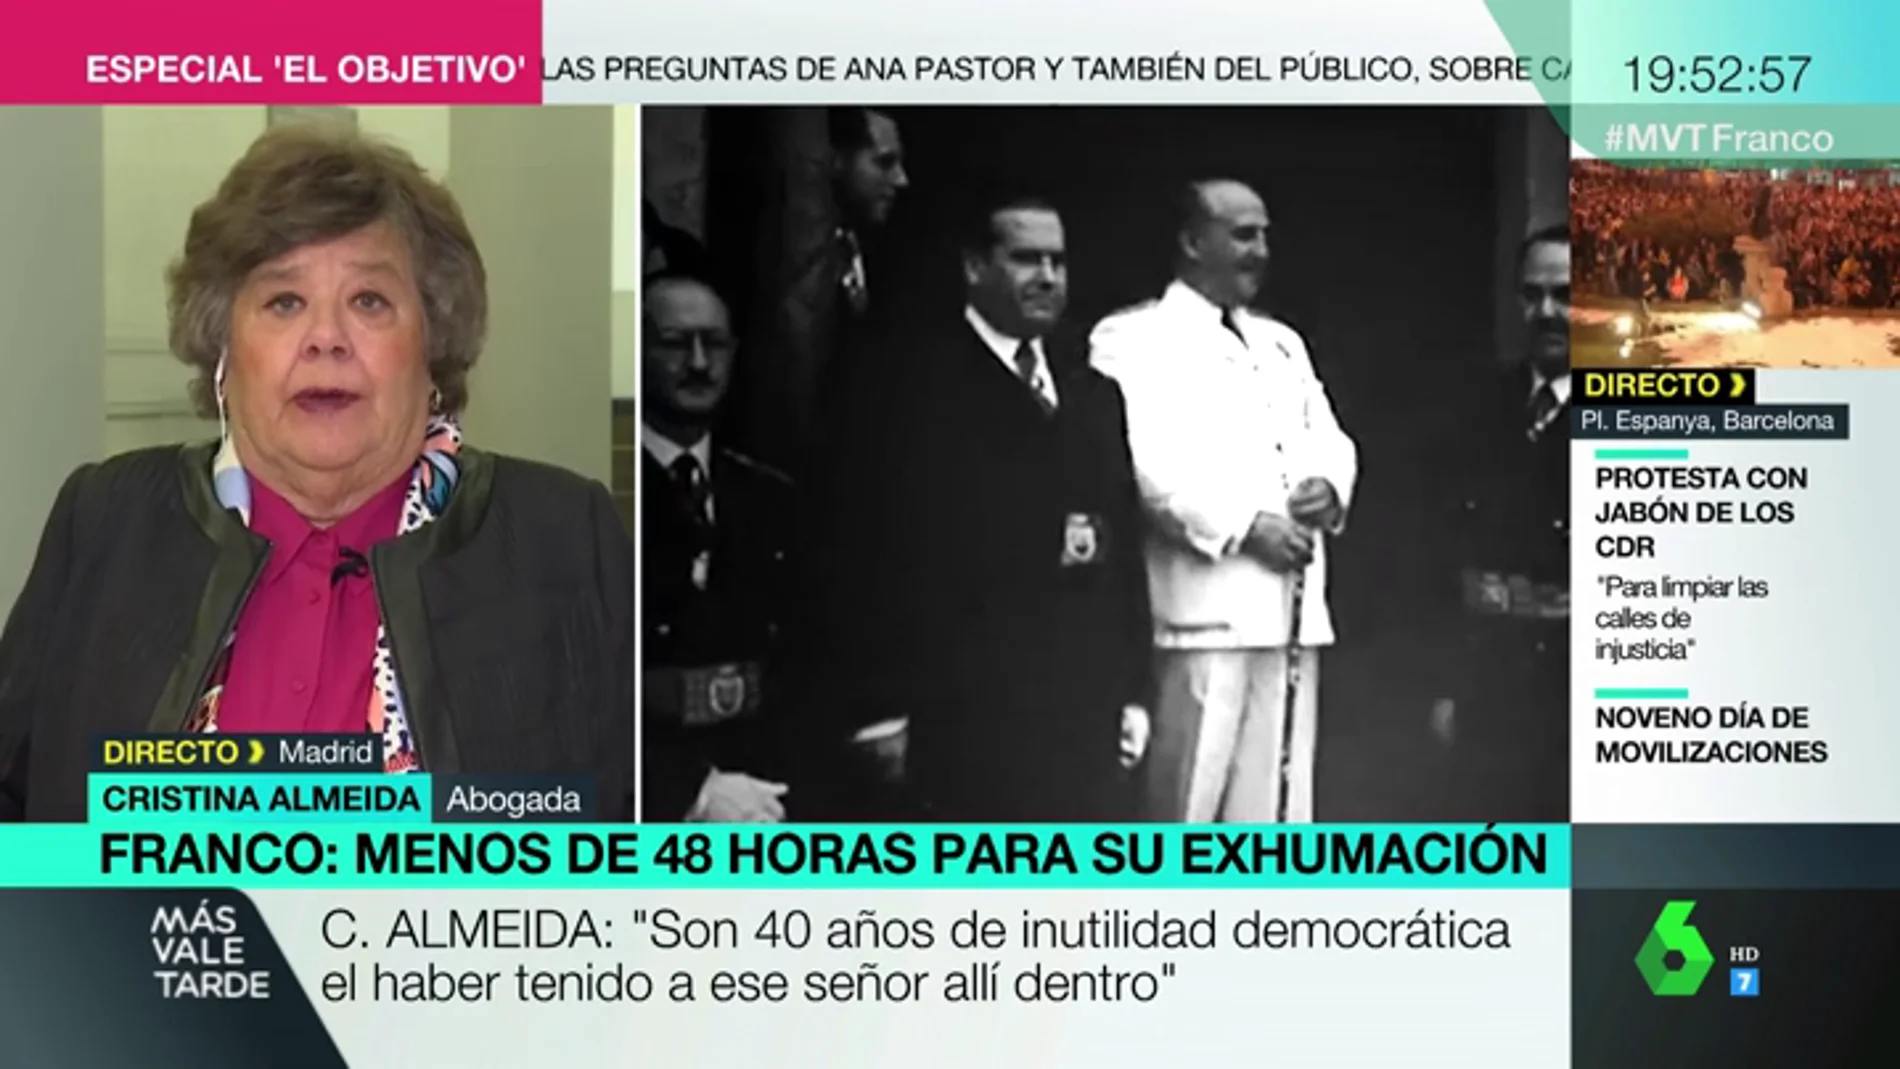 Cristina Almeida: "Con la exhumación de Franco se refrescará la democracia y desaparecerá el culto al dictador"